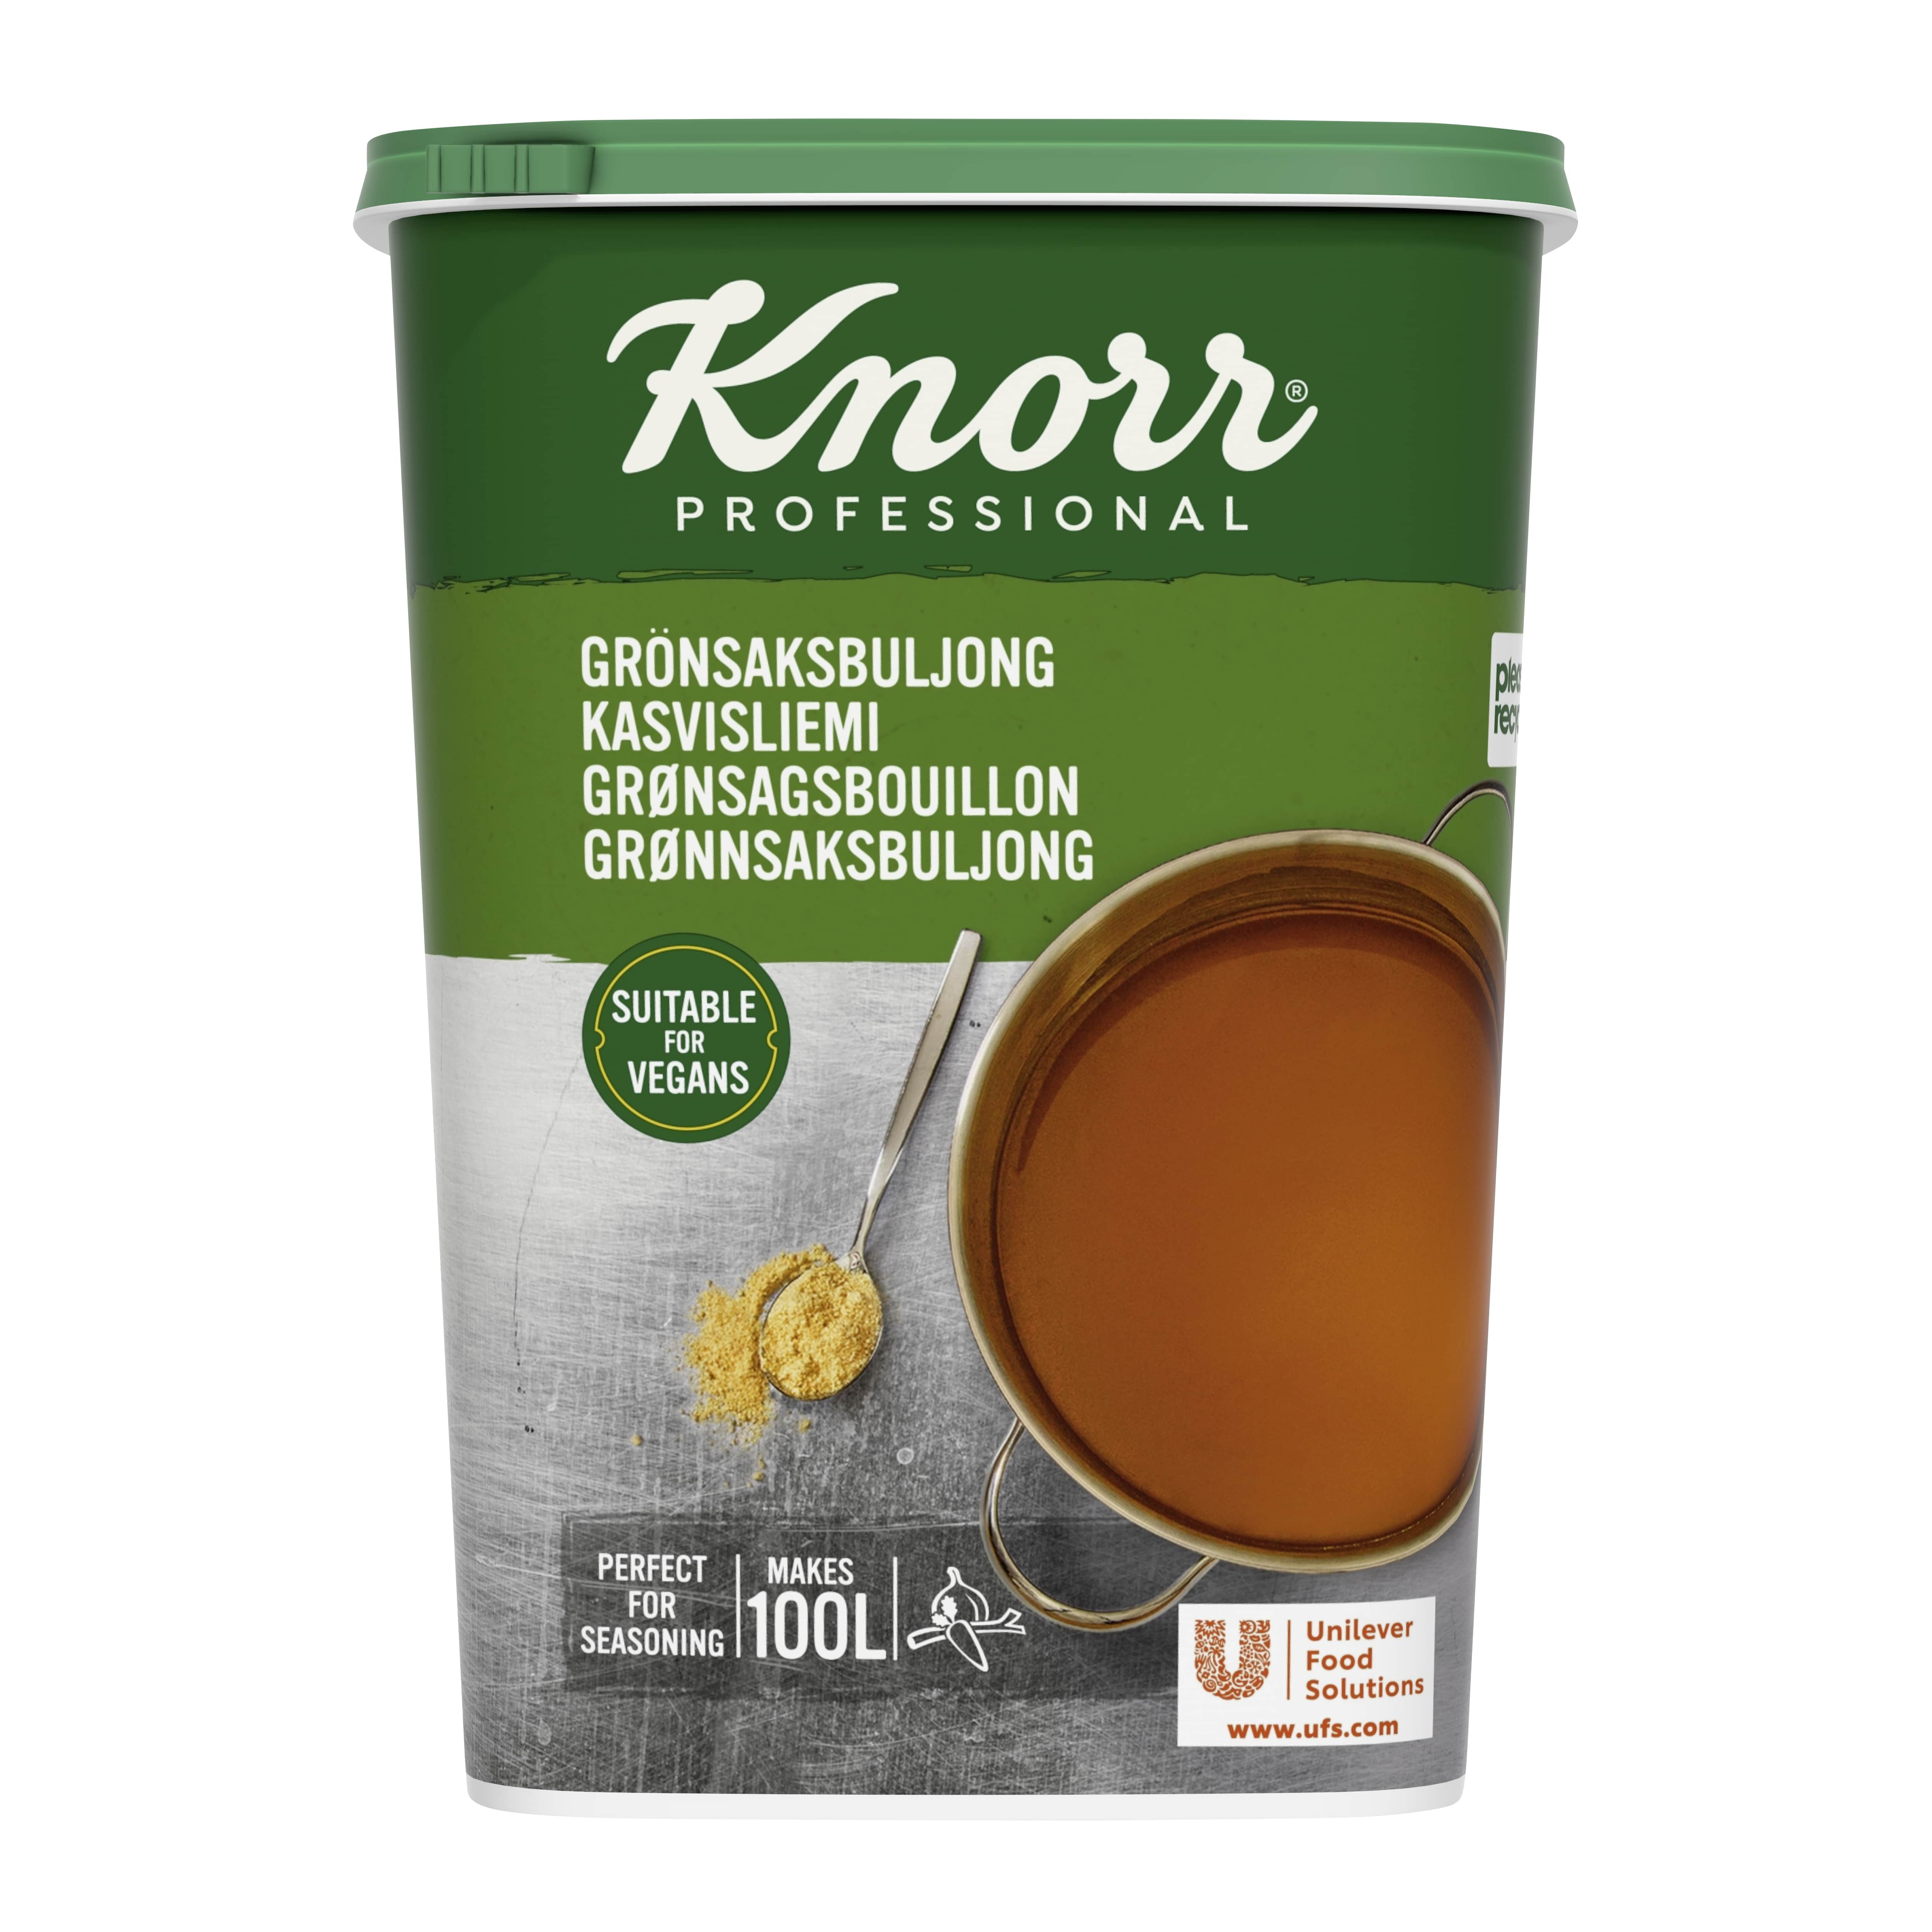 Knorr Kasvisliemi 1,5 kg / 100 L - 